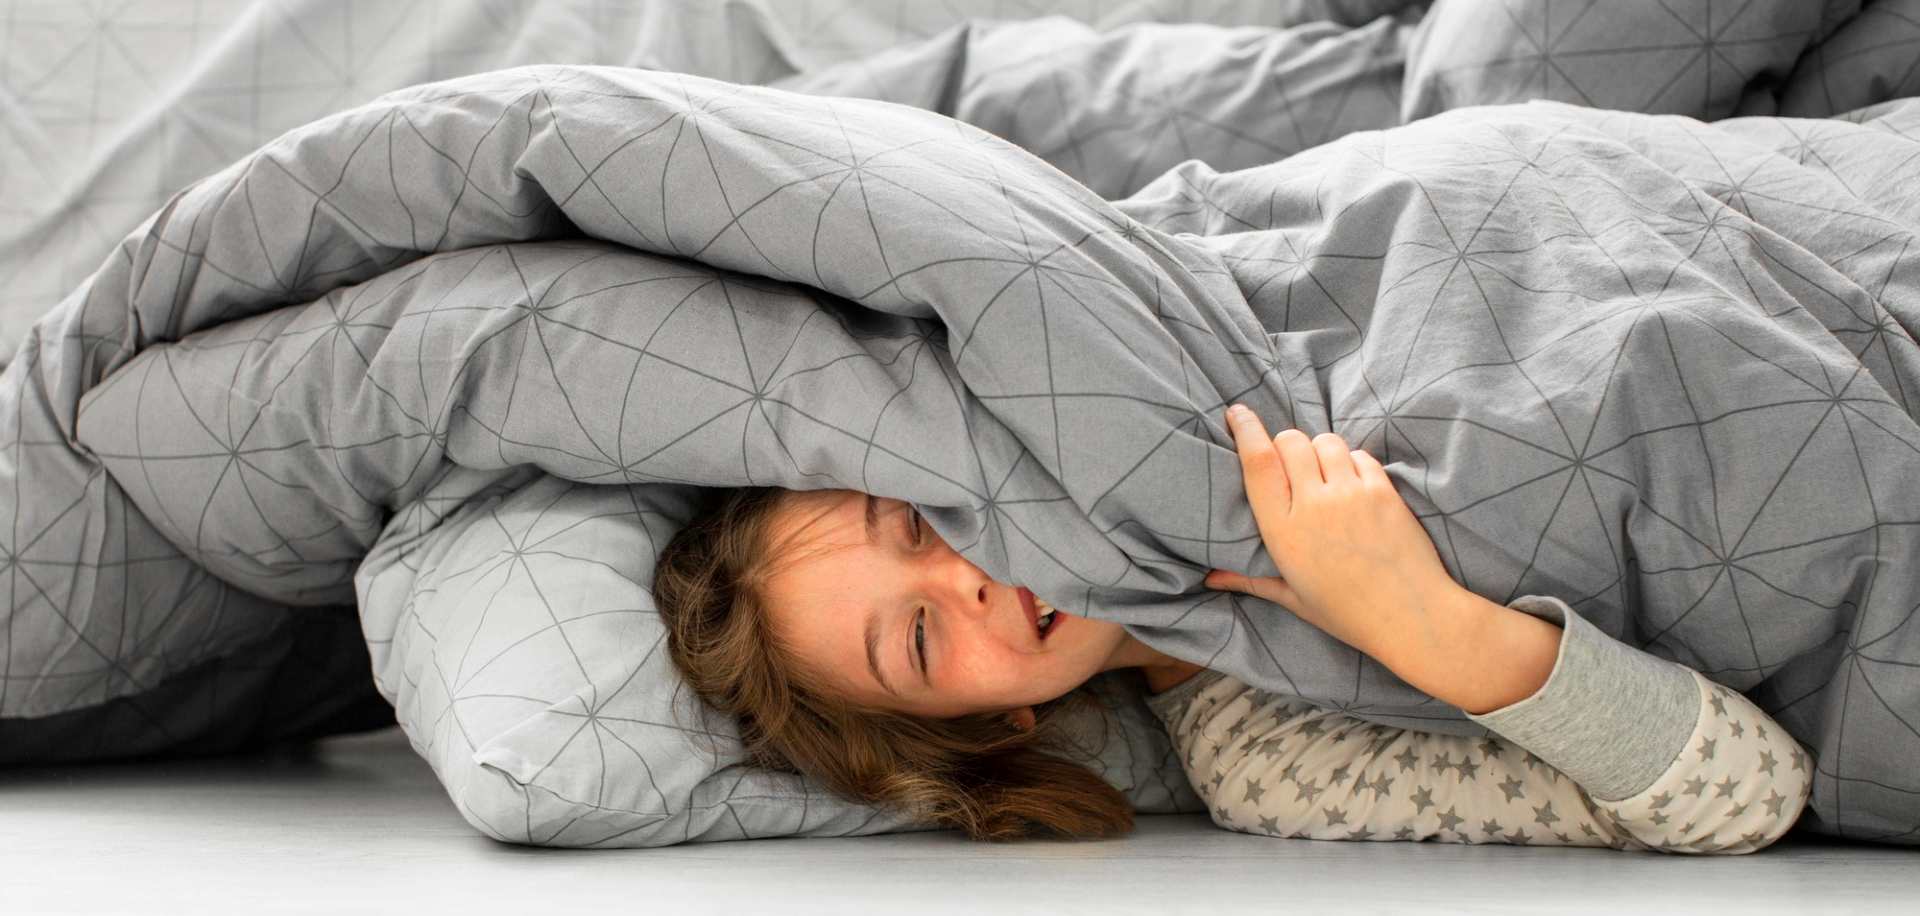 Una manta de peso realmente te ayuda a dormir? - Qmayor